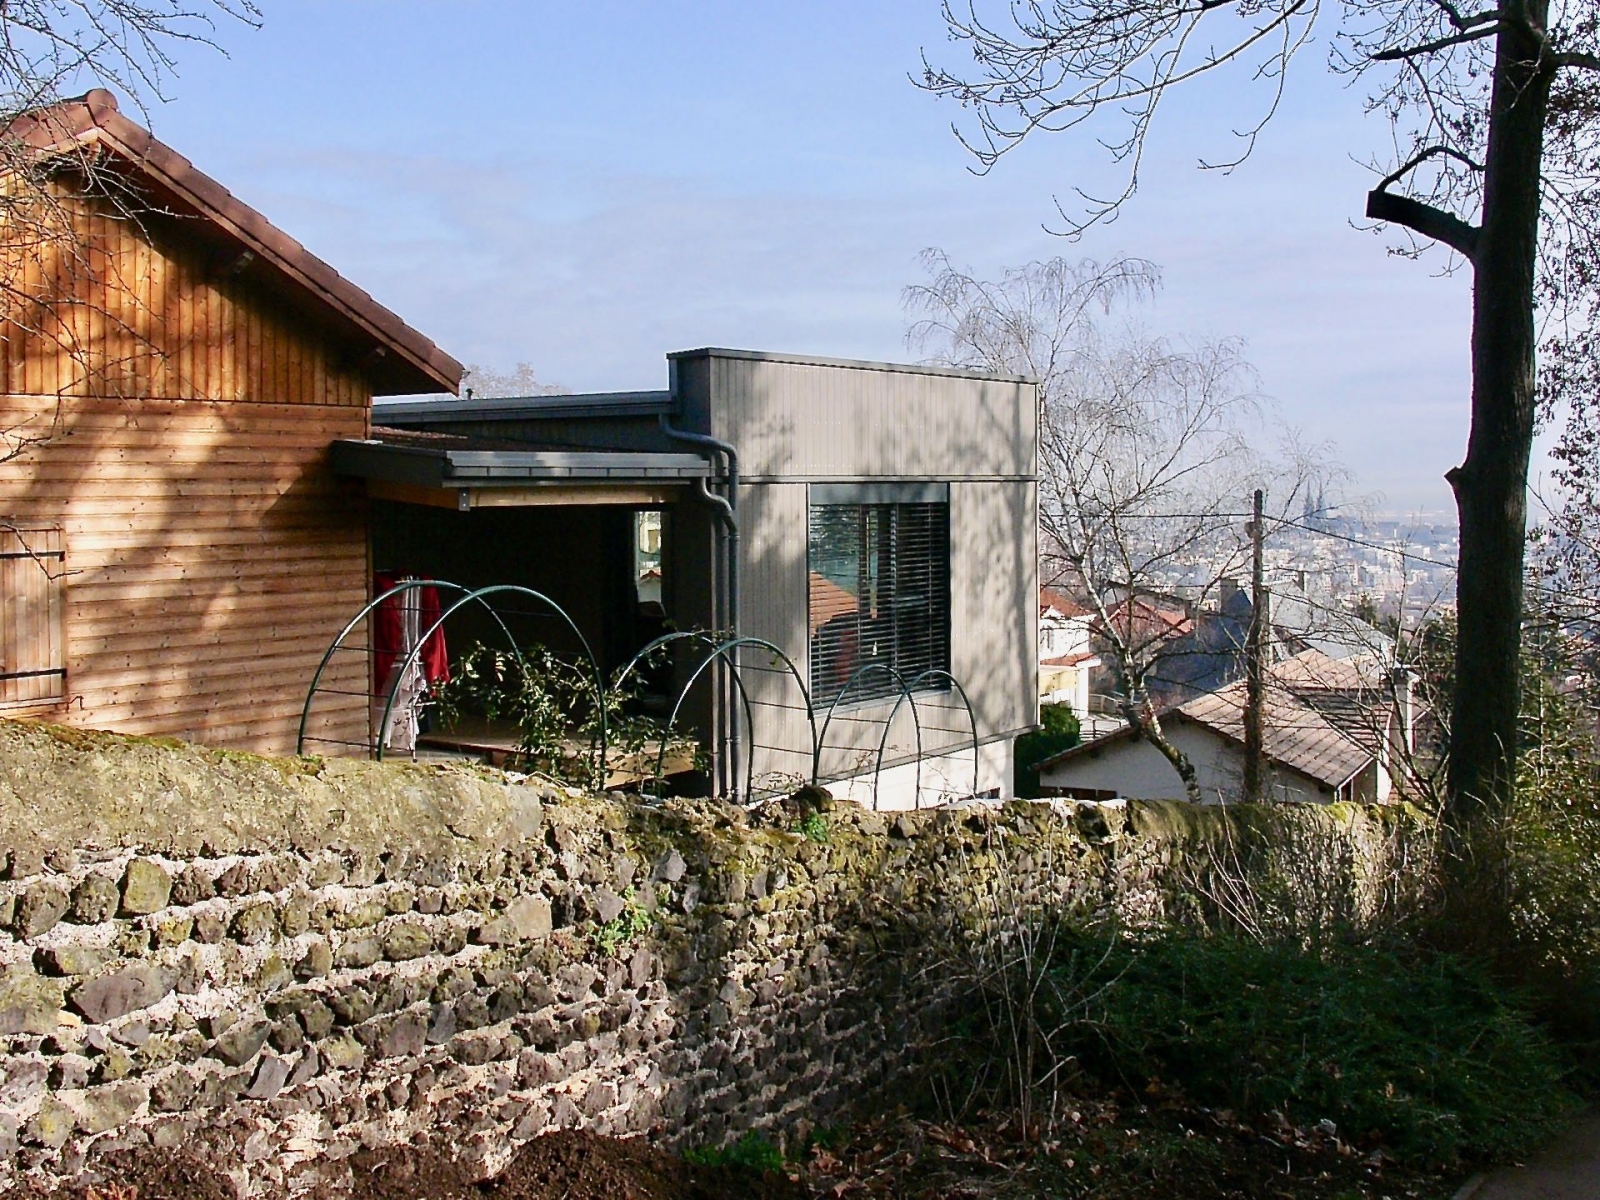 Projet S. à Chamalières (63 400).
Maison contemporaine bioclimatique et écologique au standard passif en zone urbaine.